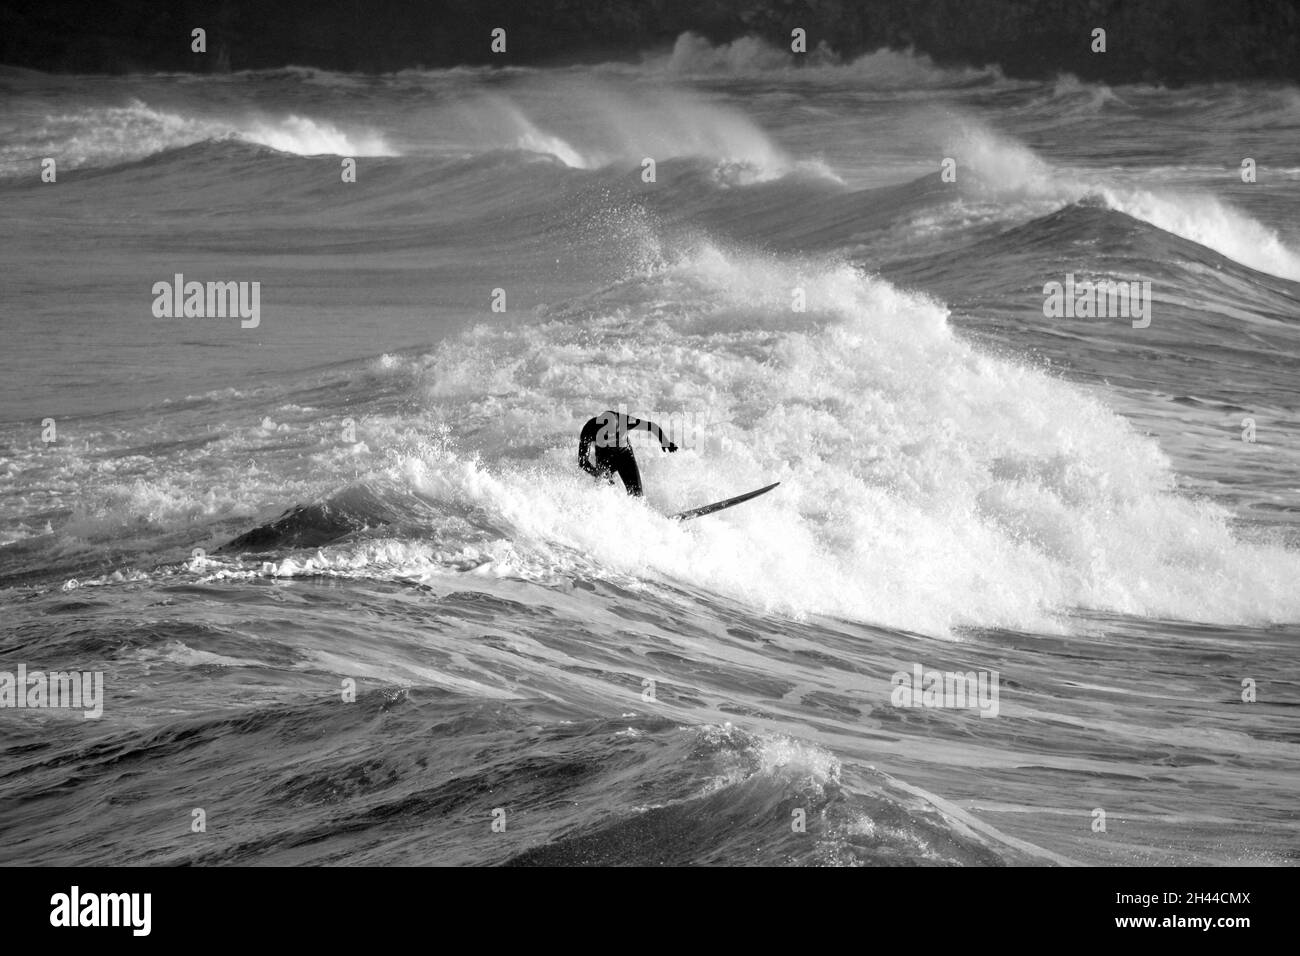 Un surfeur surfant bravement sur les vagues d'hiver près de Huntcliff, Saltburn-by-the-Sea, North Yorkshire. Photographié depuis l'embarcadère de Saltburn. Noir et blanc. Banque D'Images